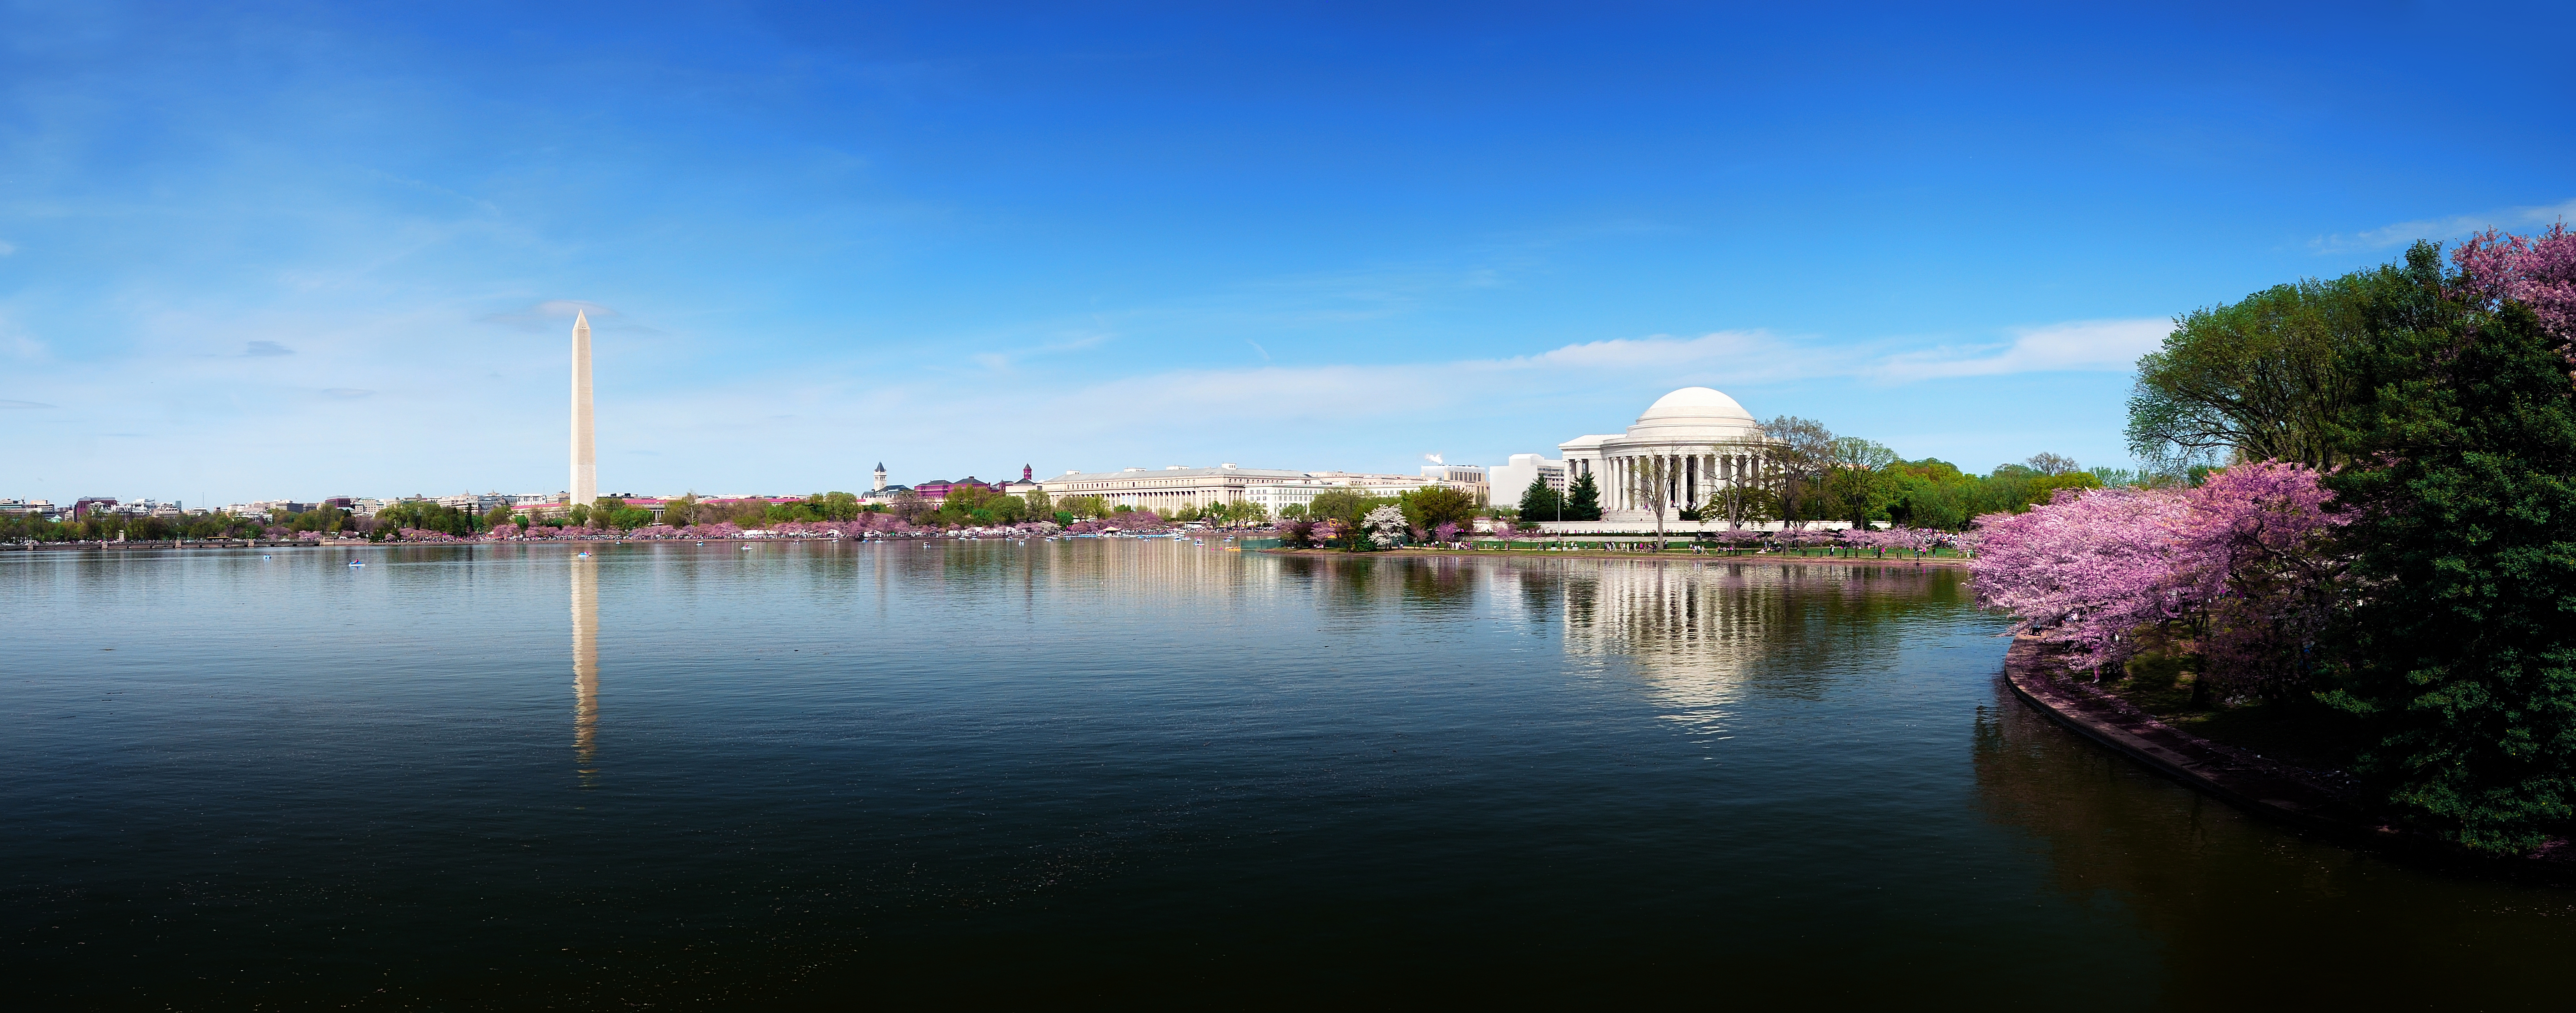 Photo of Washington monument and lake